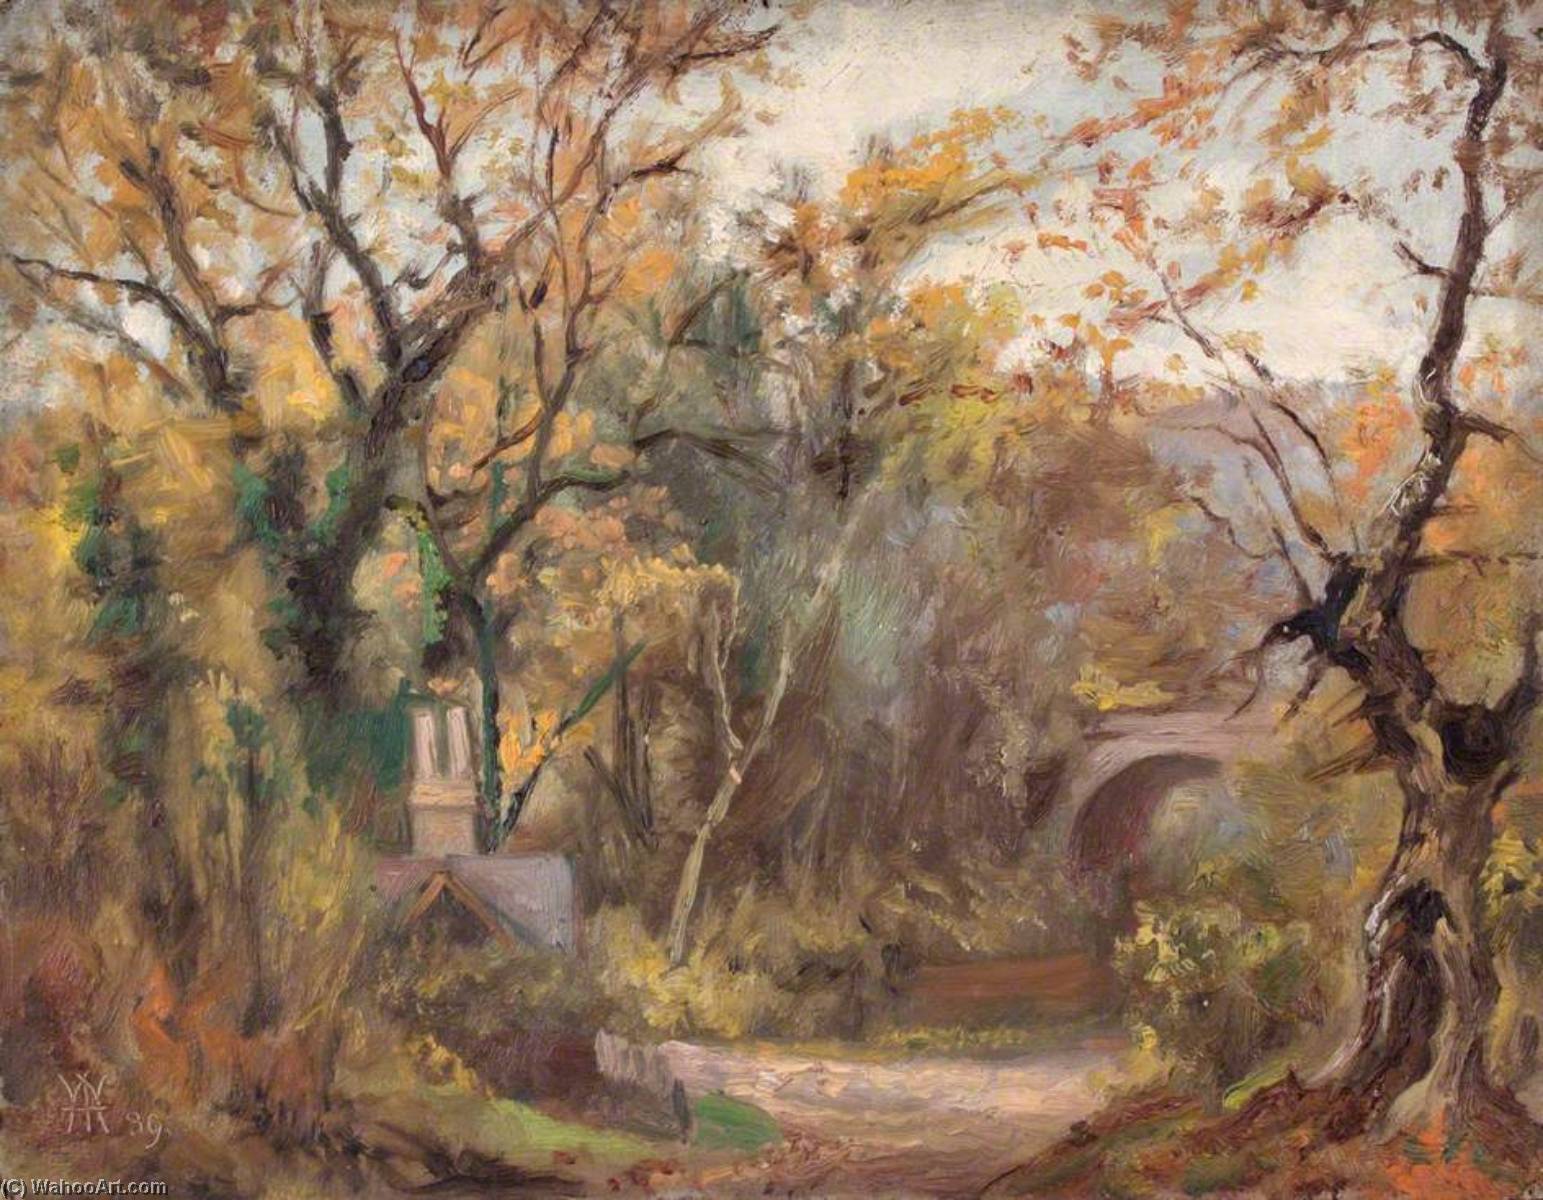 Achat Reproductions D'art Road to Purley Town, Surrey, 30 octobre 1889, 1889 de William Henry Hope (1835-1917) | ArtsDot.com